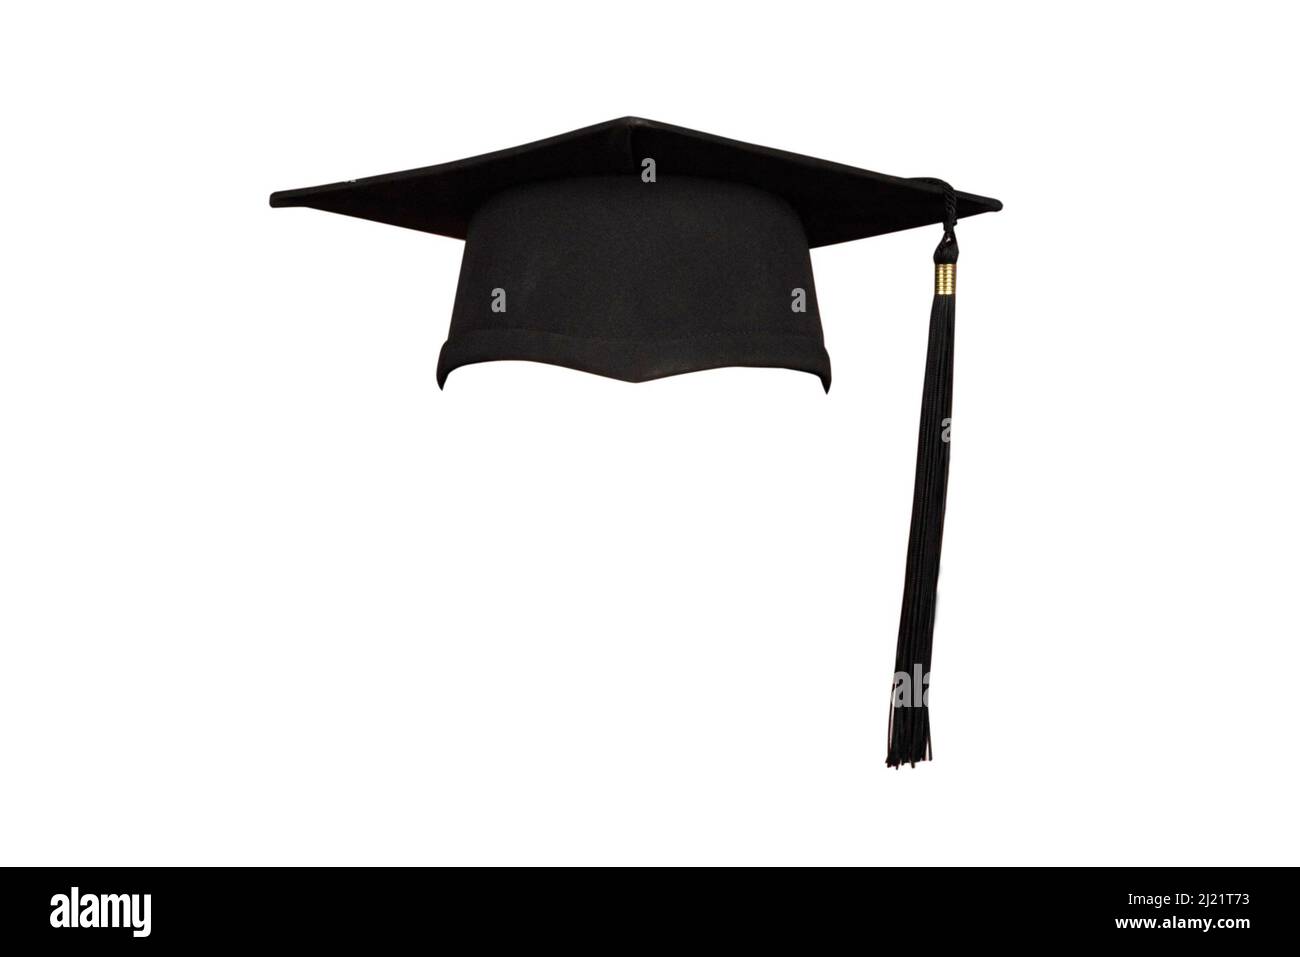 Graduation cap isolated on white background Stock Photo